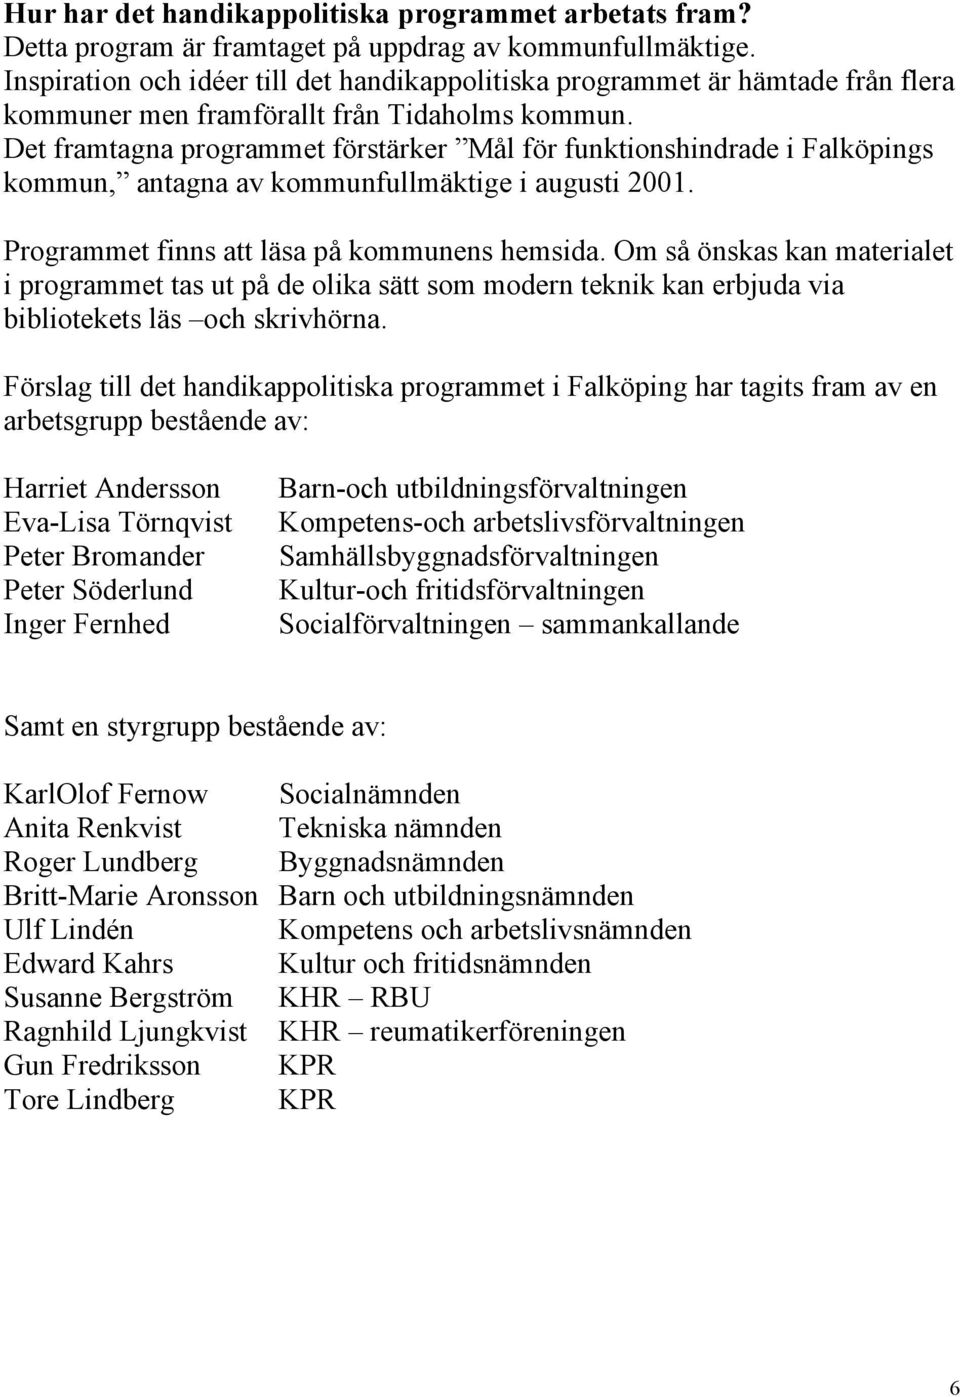 Det framtagna programmet förstärker Mål för funktionshindrade i Falköpings kommun, antagna av kommunfullmäktige i augusti 2001. Programmet finns att läsa på kommunens hemsida.